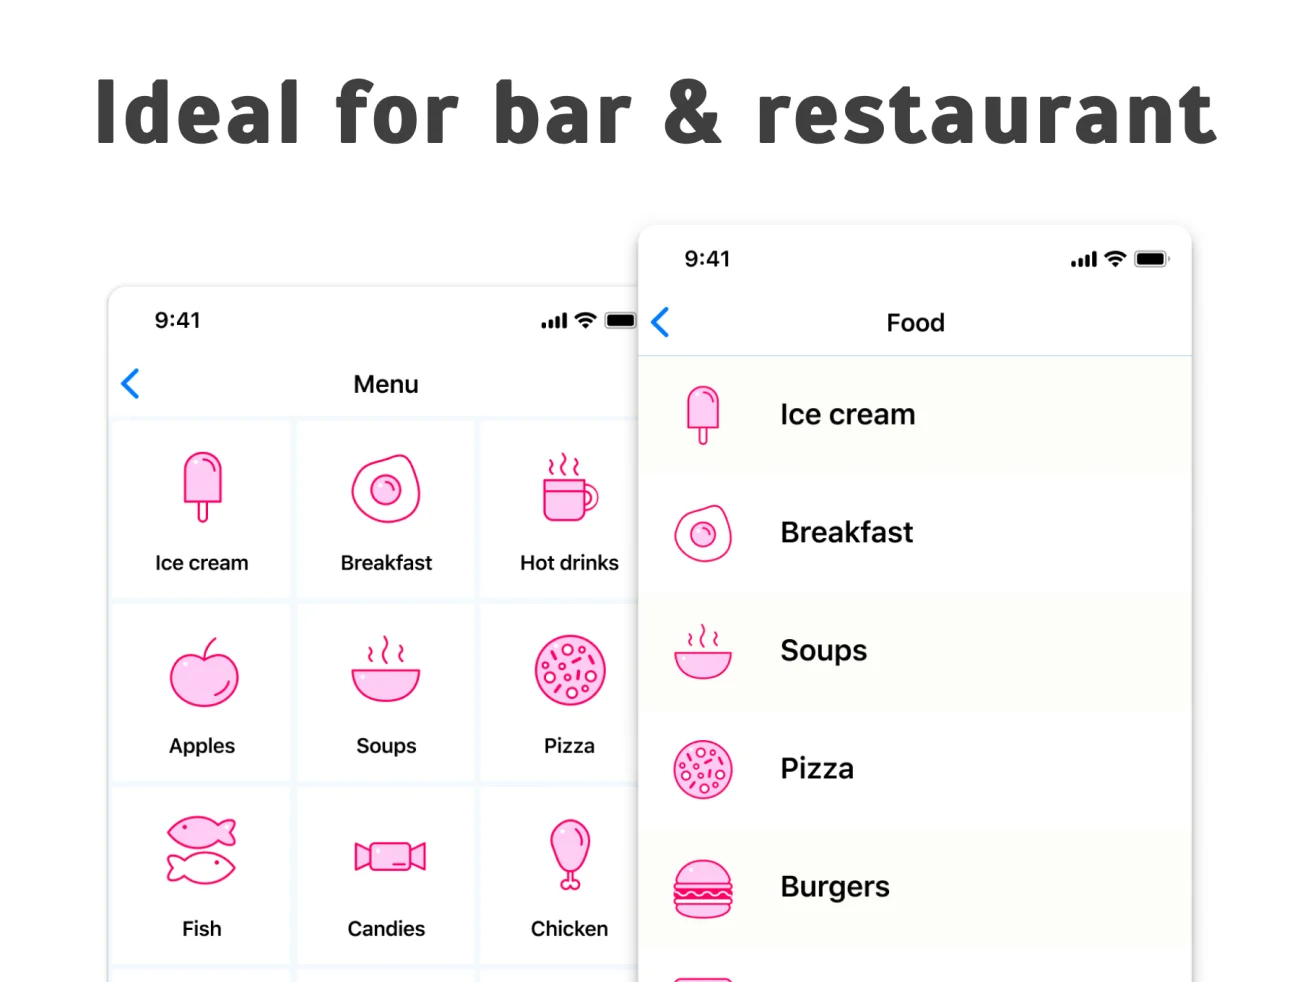 64款适合酒吧餐厅的餐饮美食图标 Food Icons Set插图11